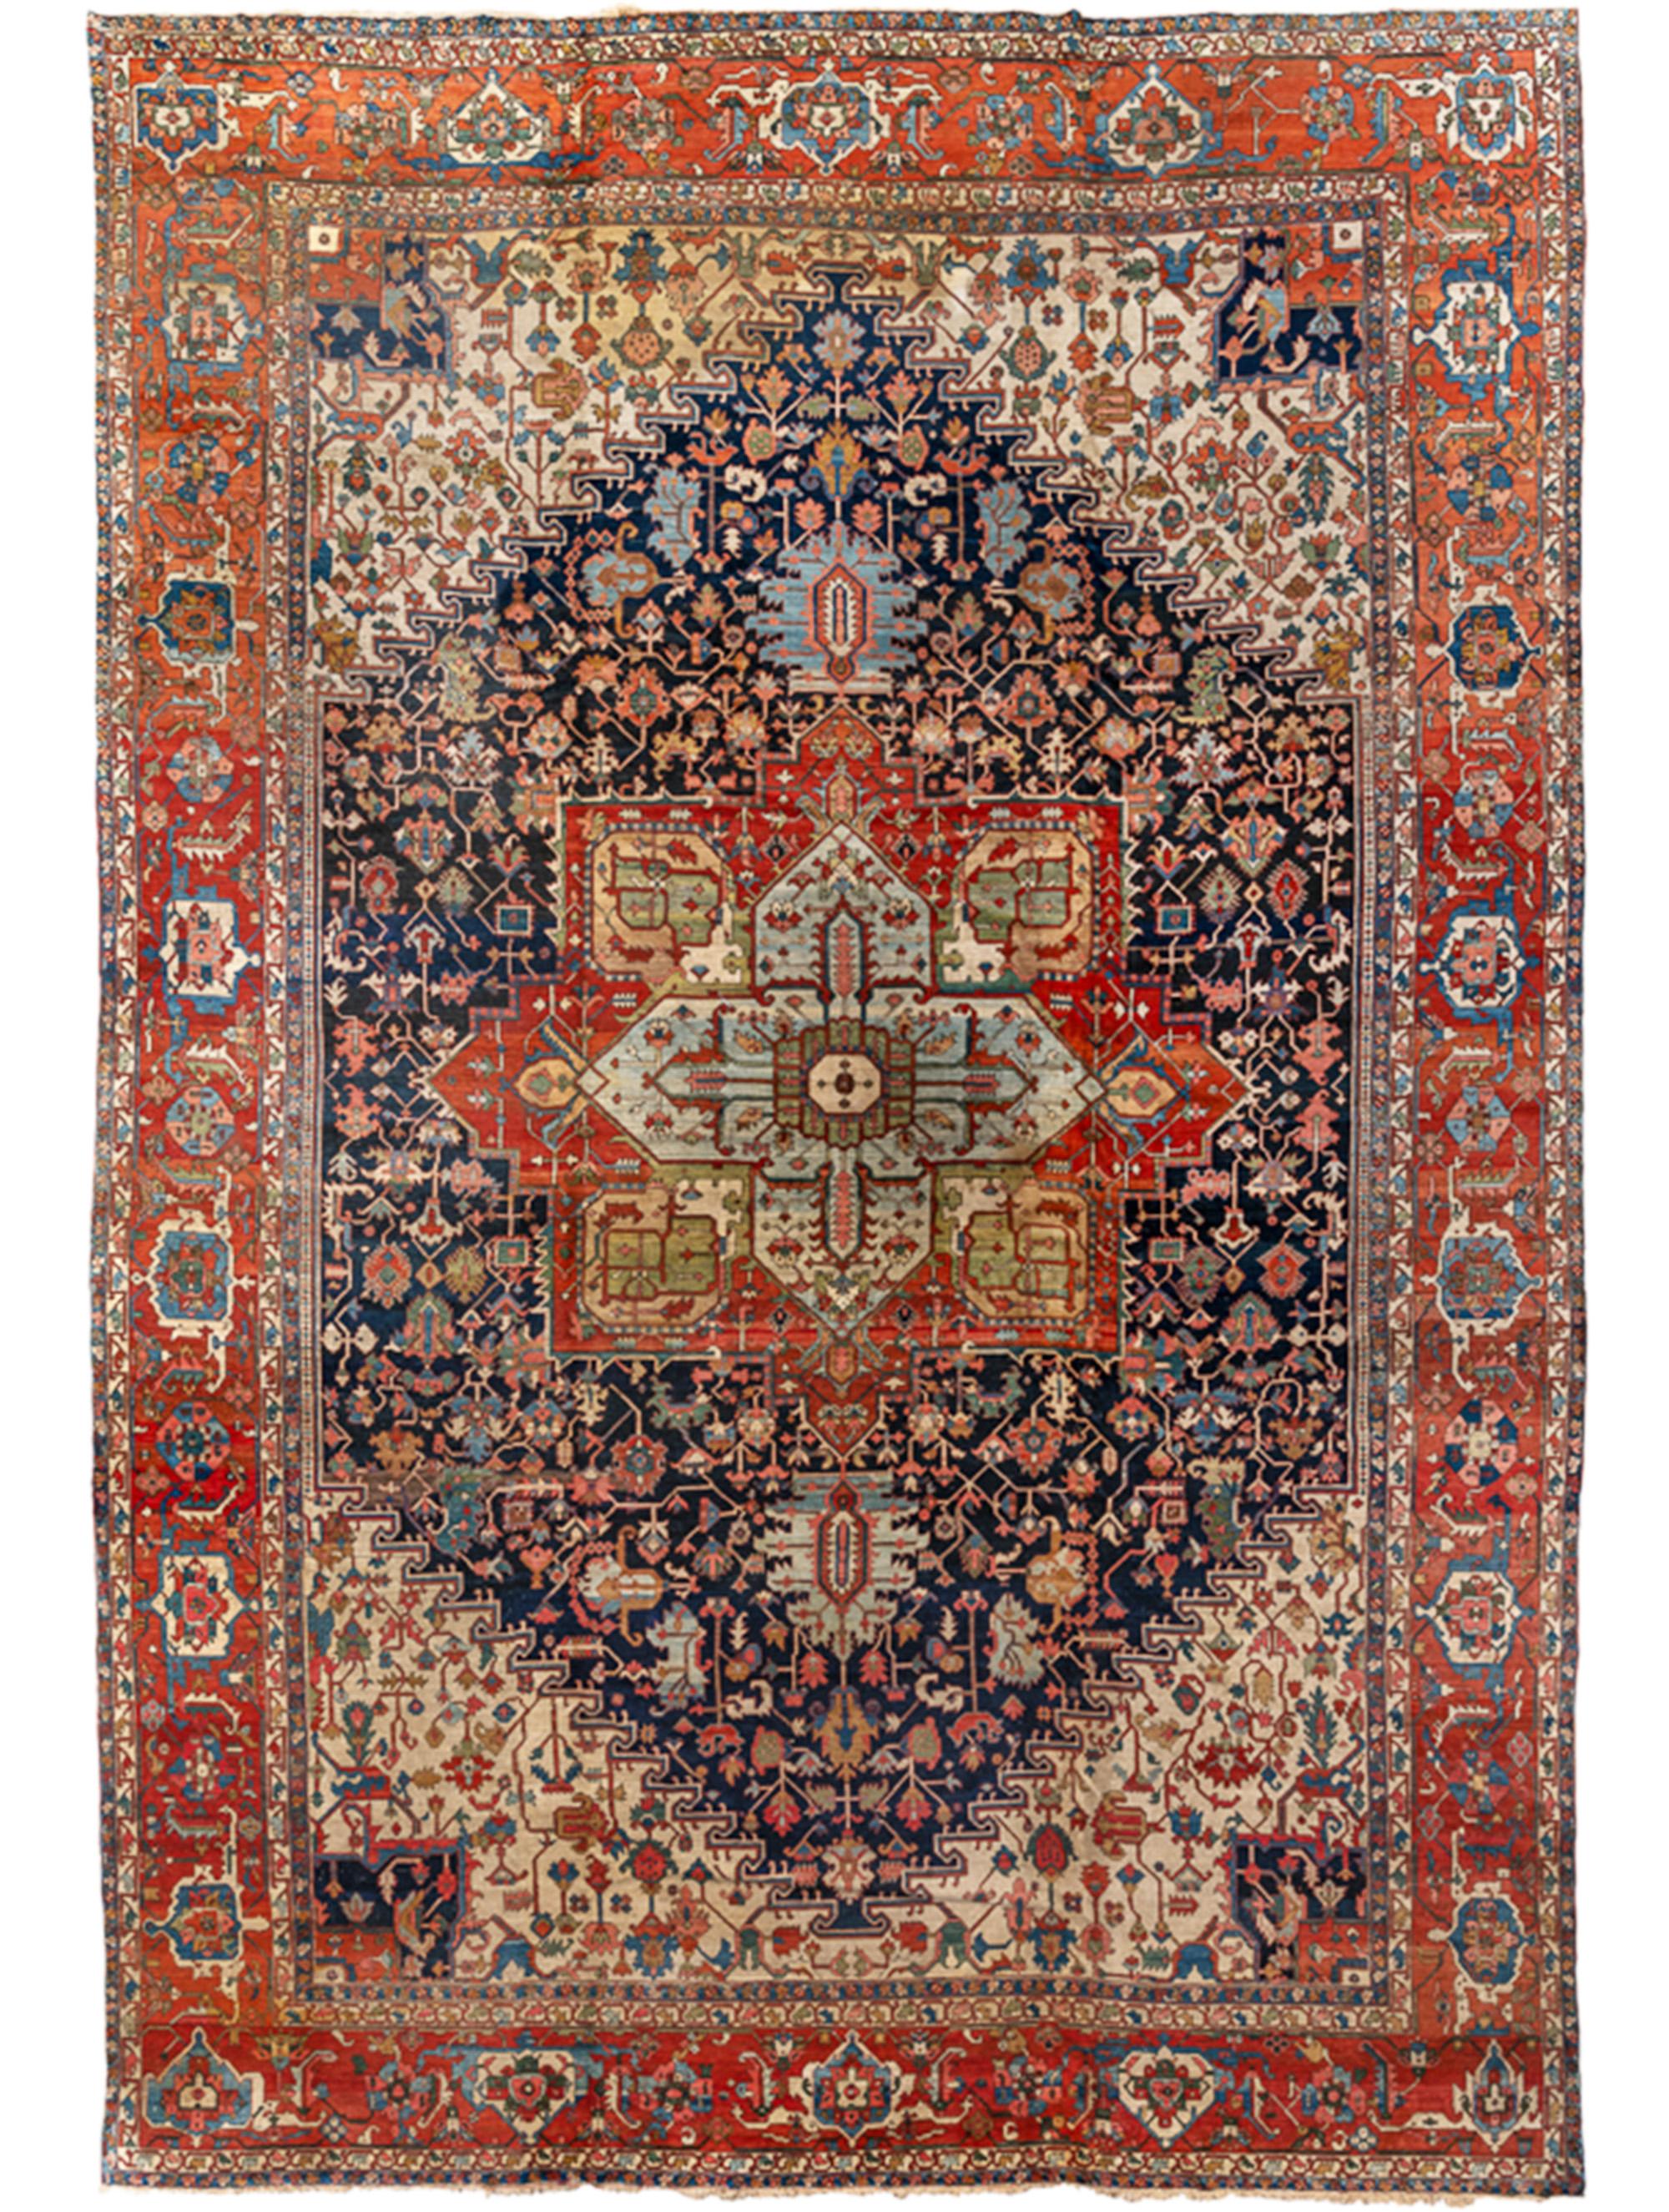 Antiker persischer handgewebter Serapi-Teppich aus luxuriöser Wolle 14'-8" x 21'-4" Größe